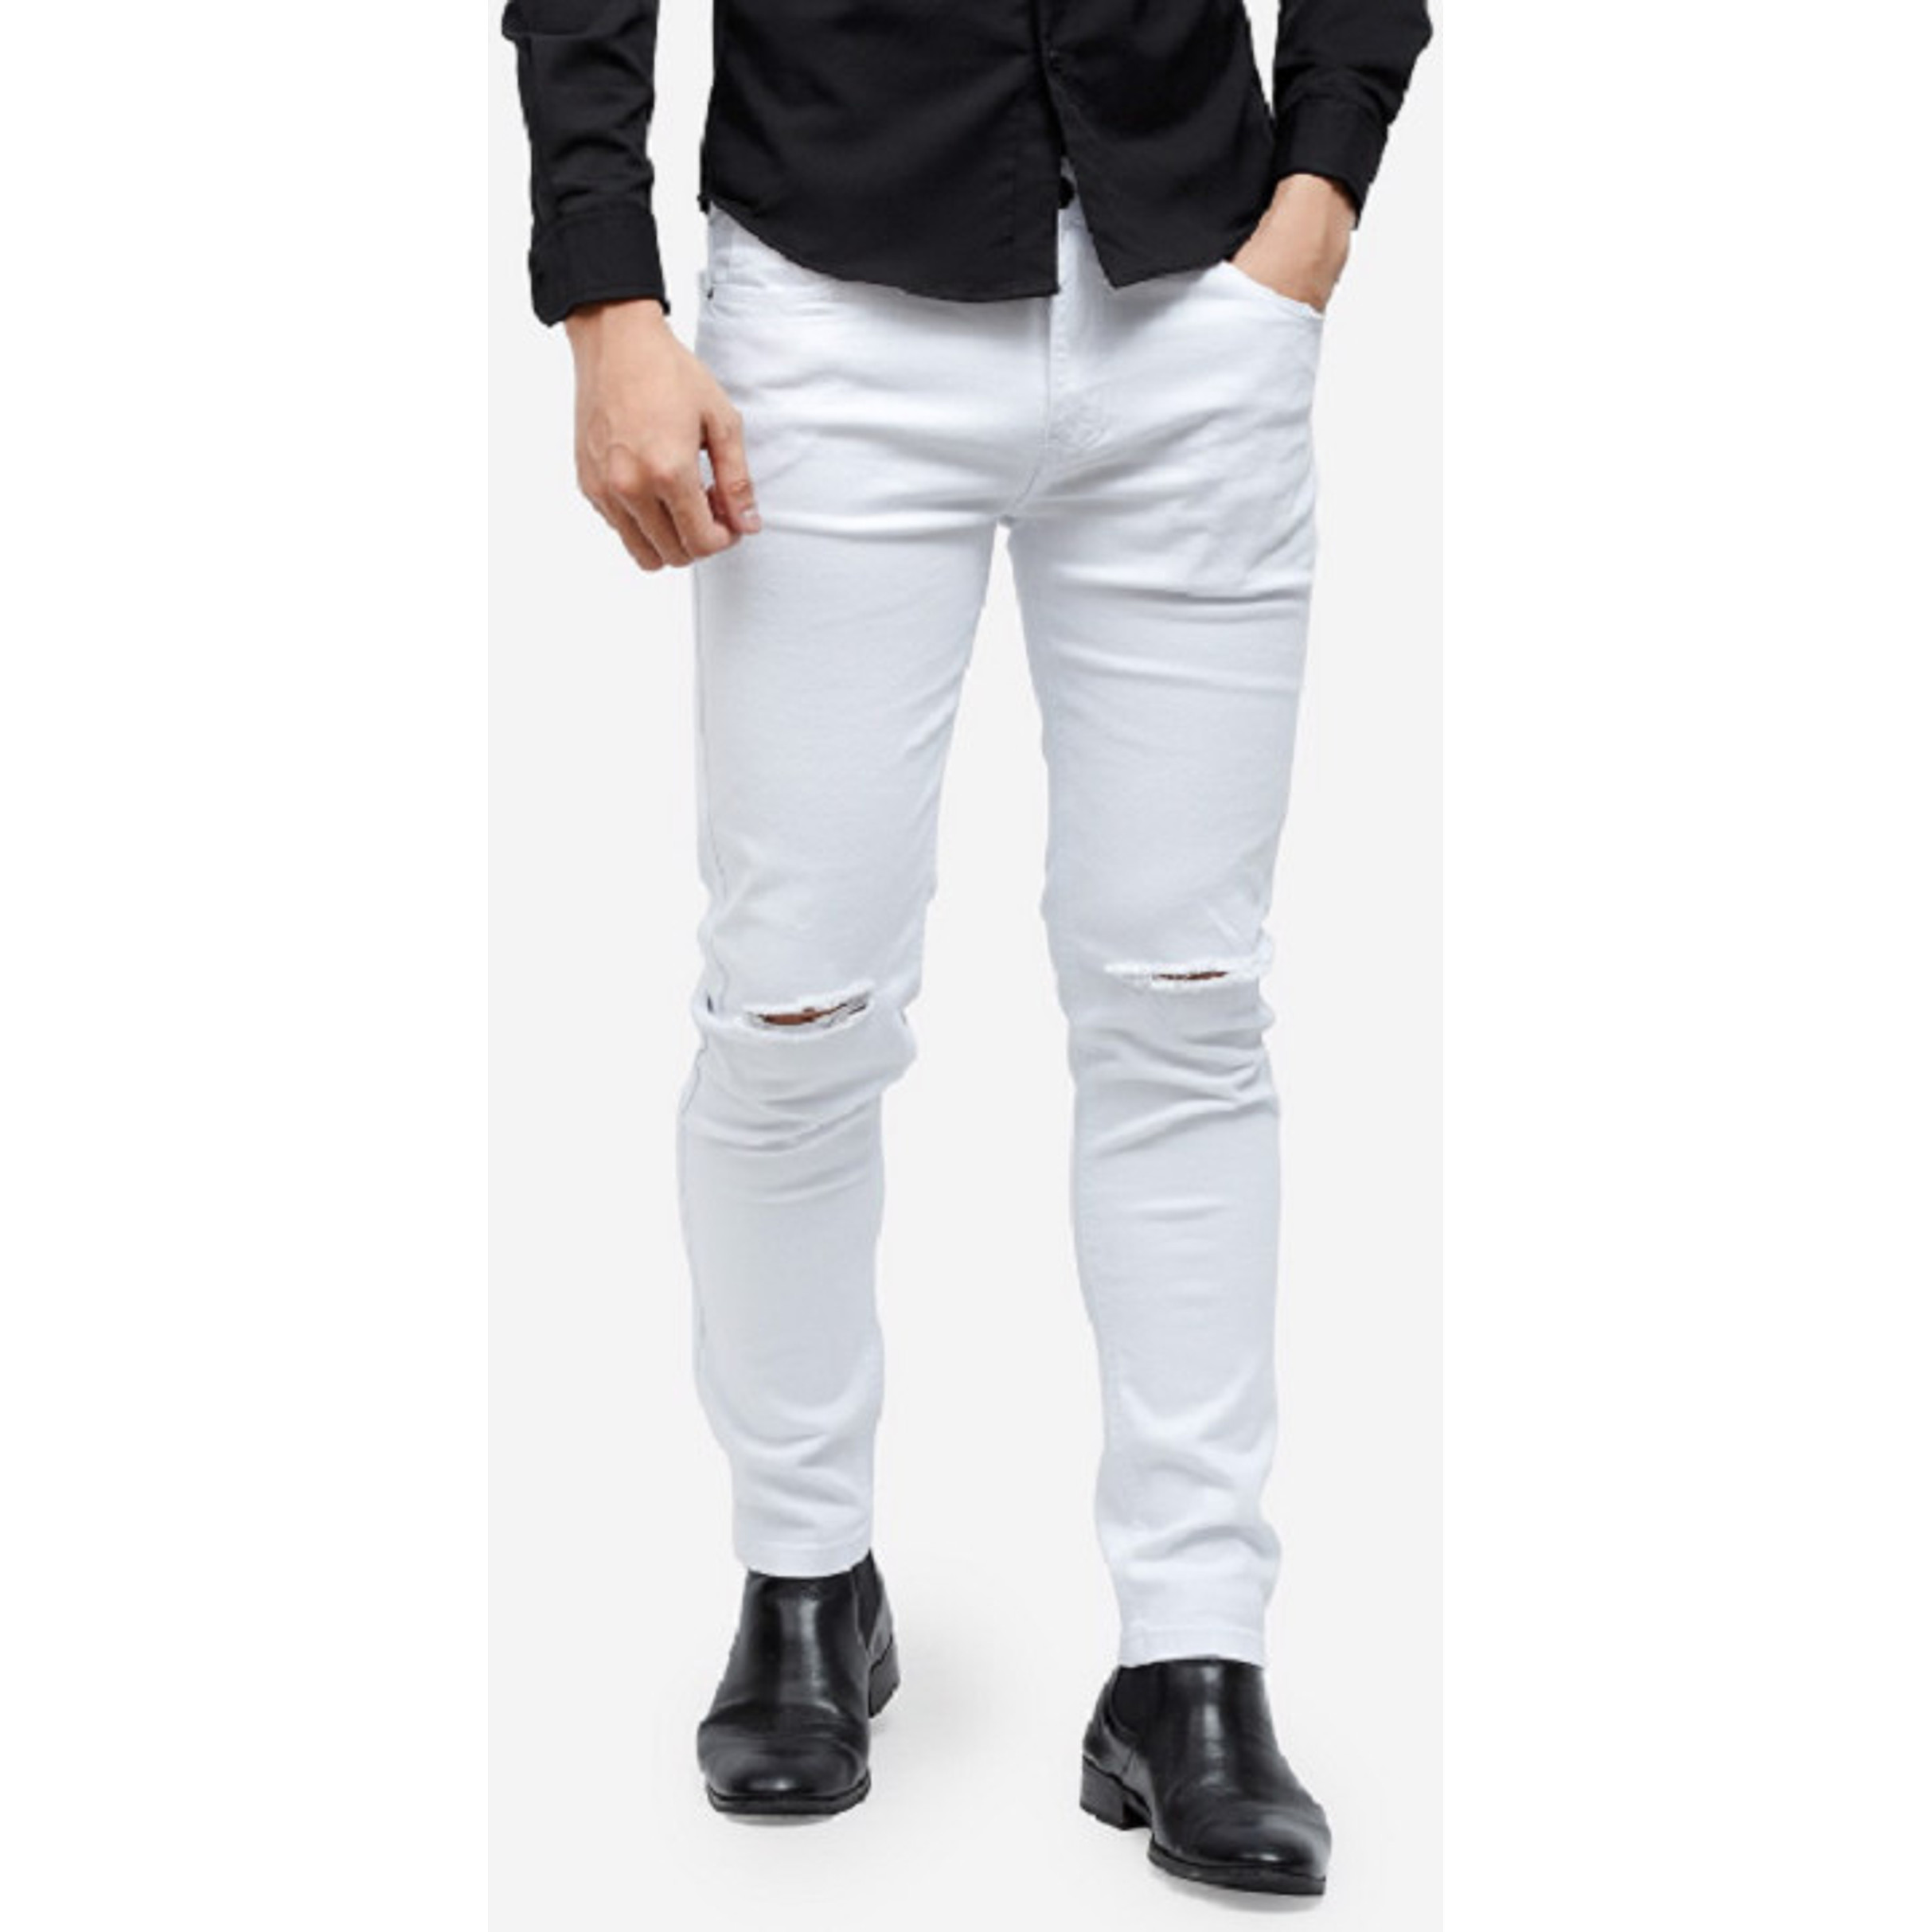 Quần Jeans Titishop QJ157 màu trắng rách gối - 33